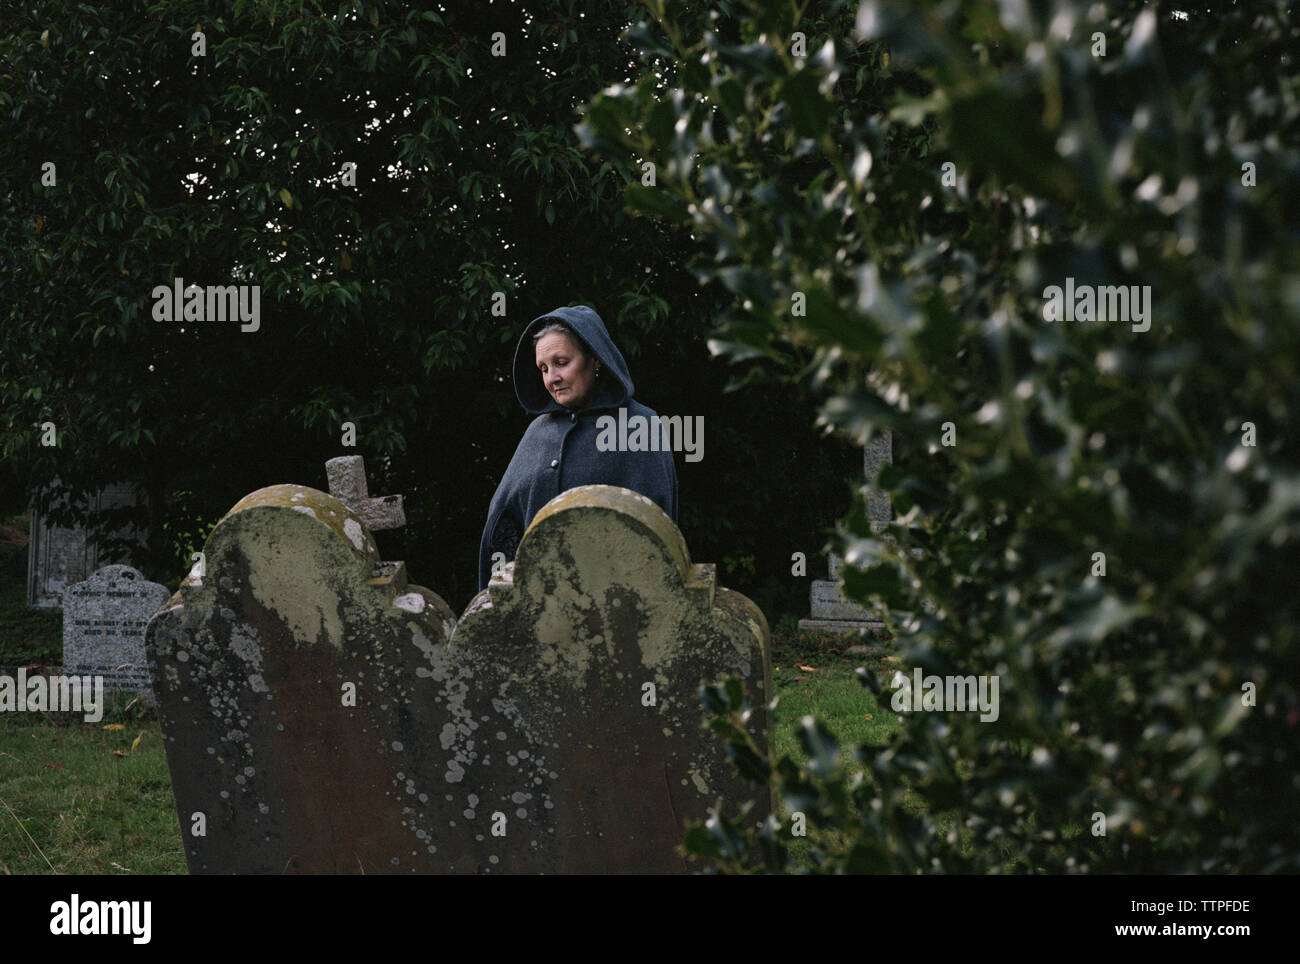 Sad woman manteau en cimetière Banque D'Images